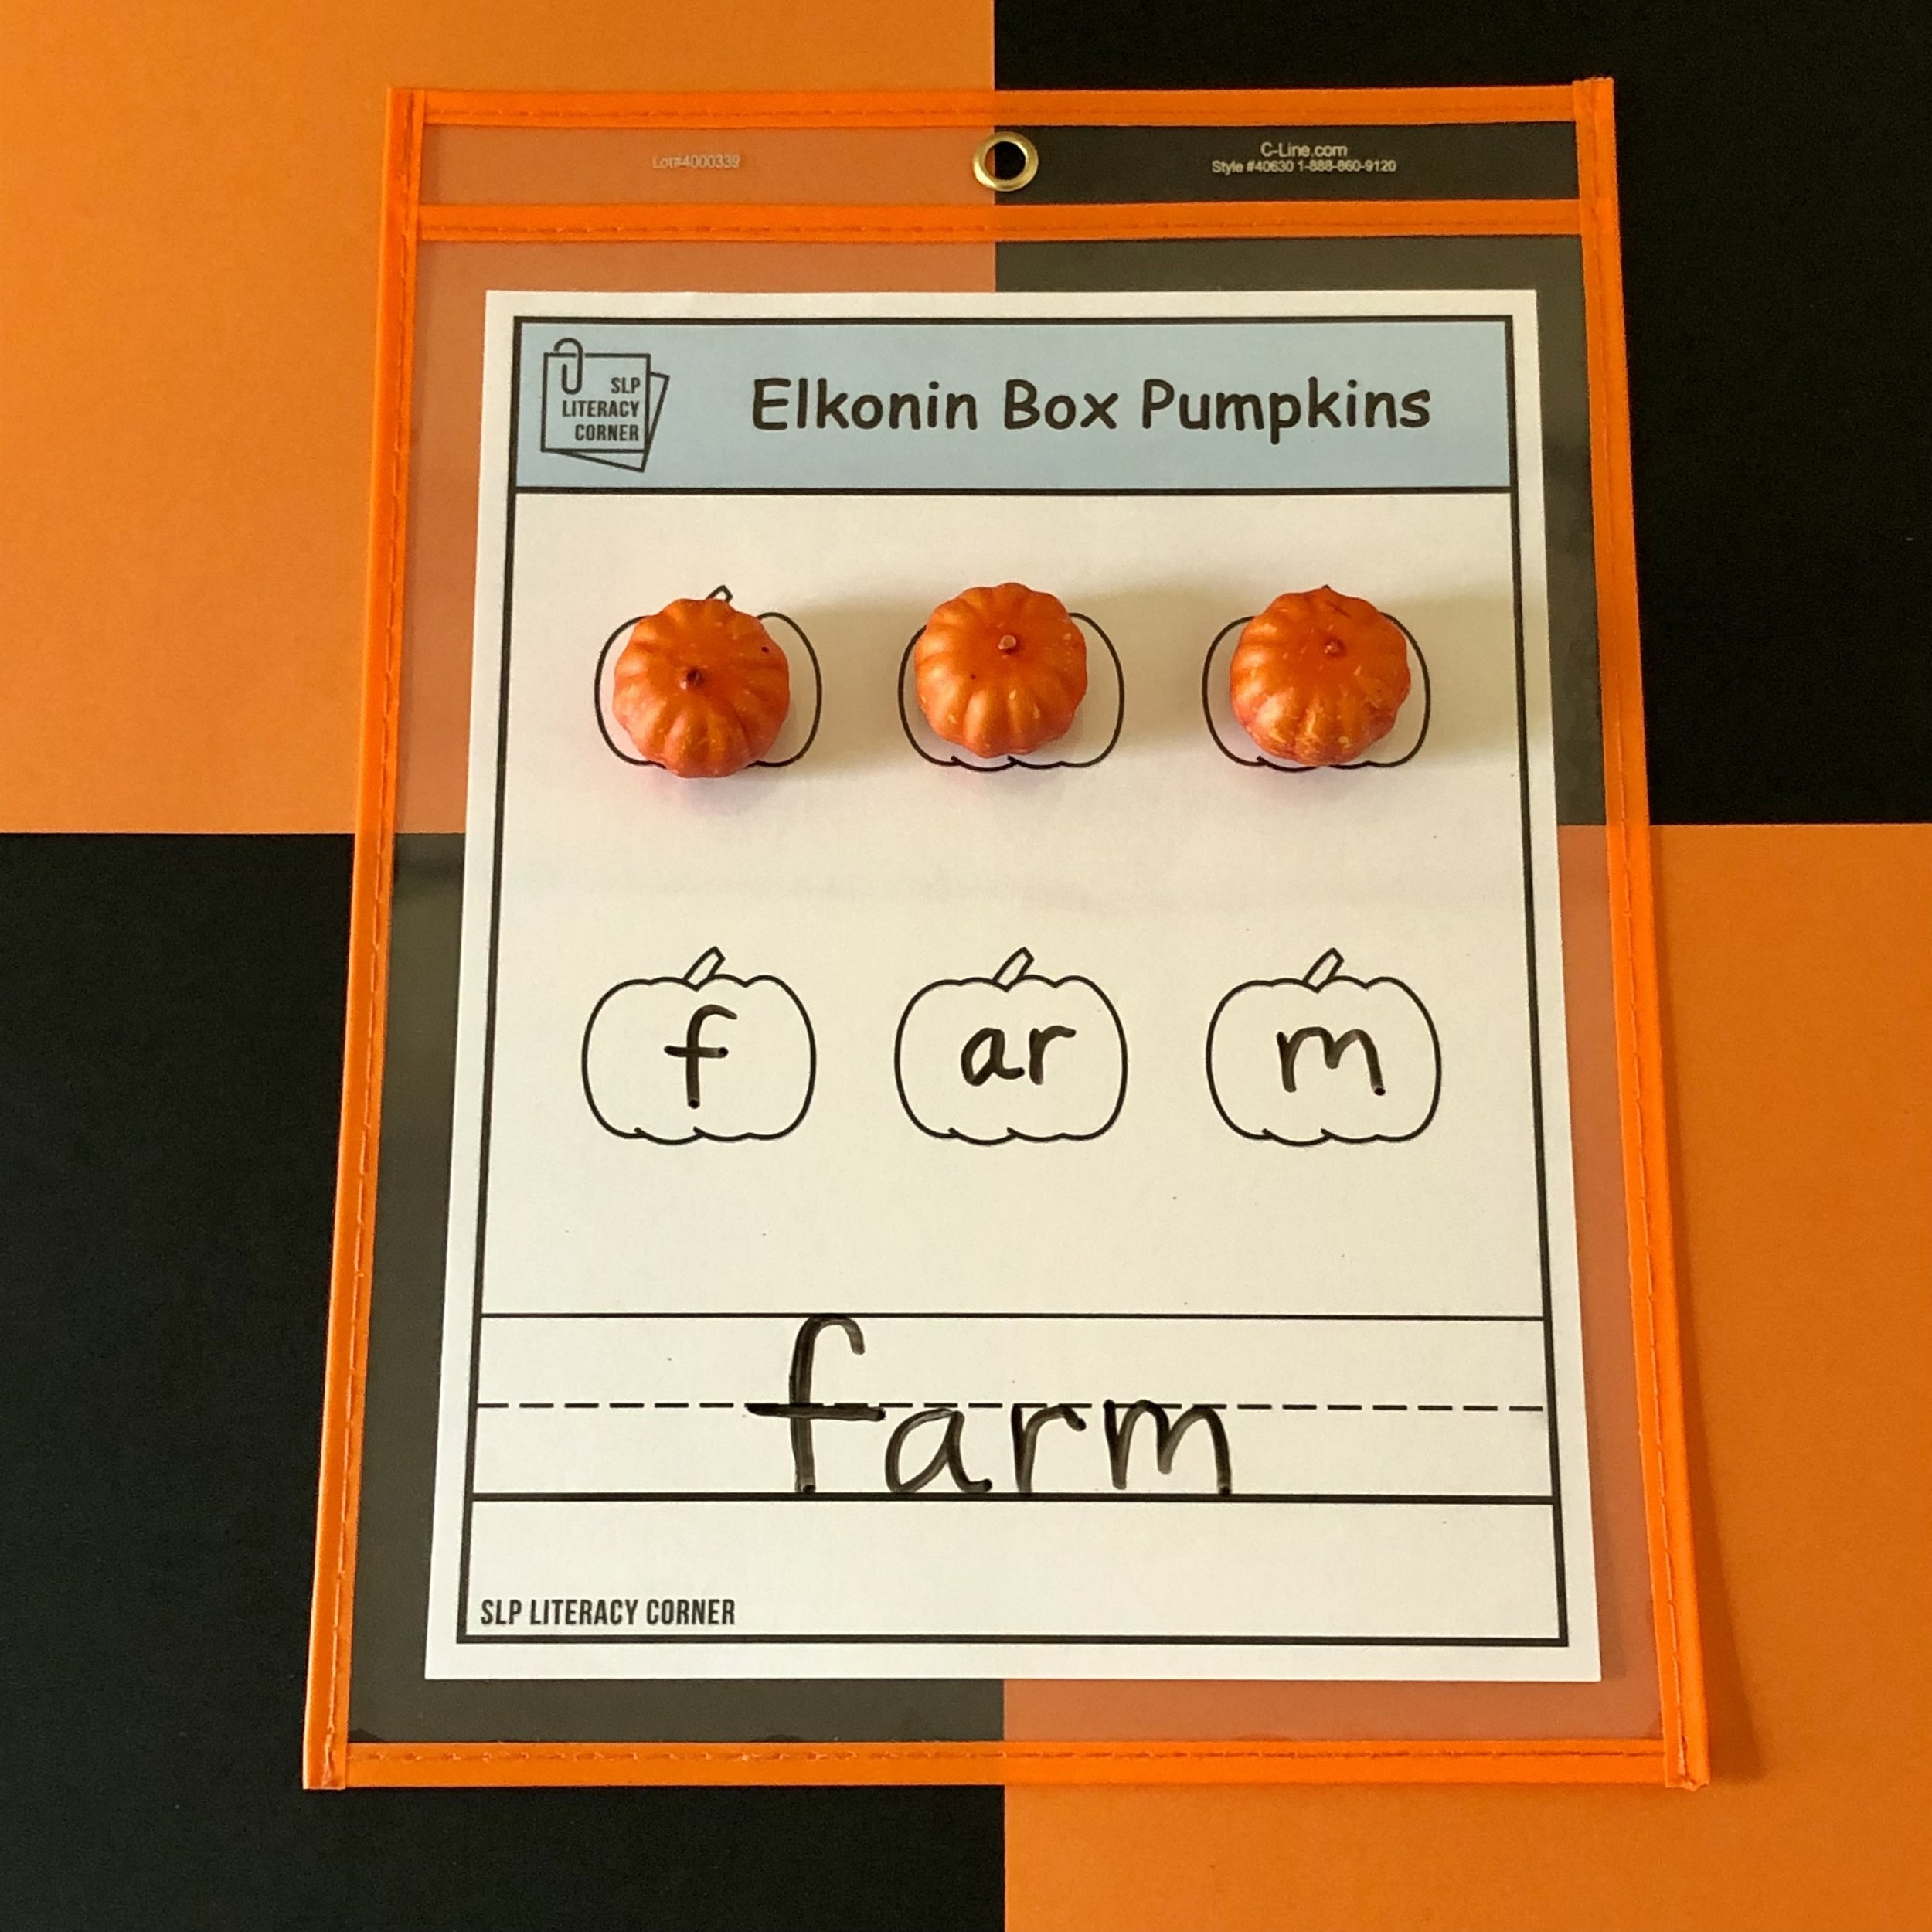 SLP Literacy Corner Elkonin Box Pumpkins 3.jpg